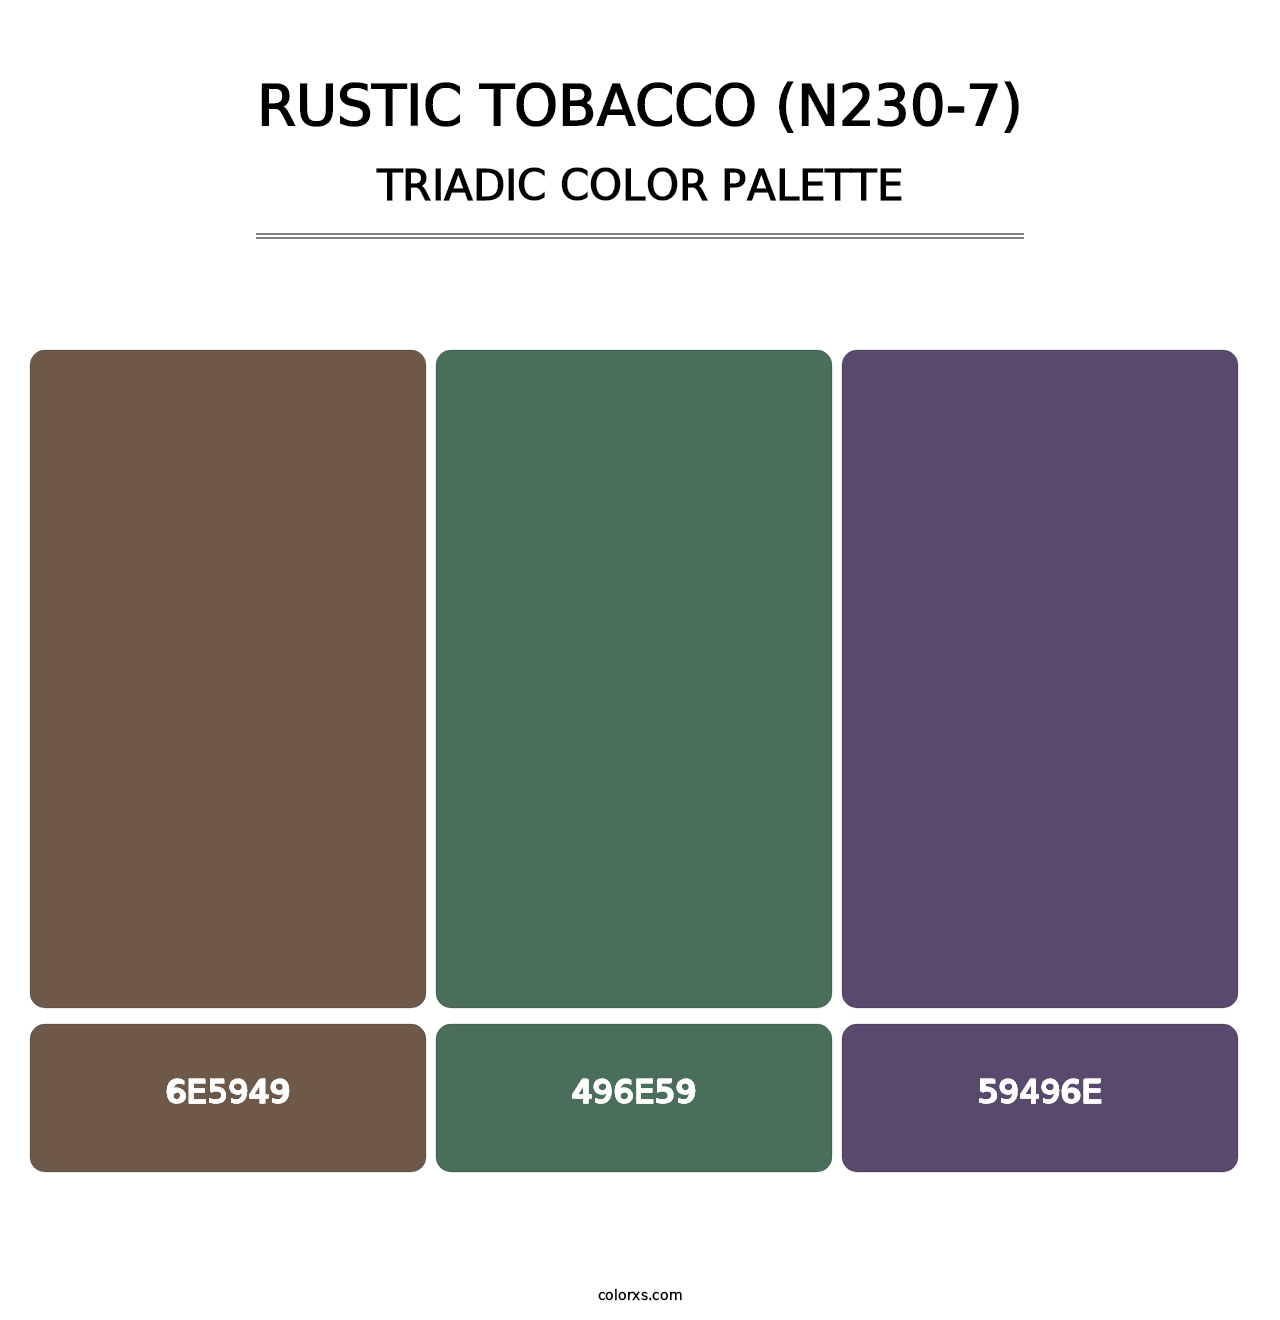 Rustic Tobacco (N230-7) - Triadic Color Palette